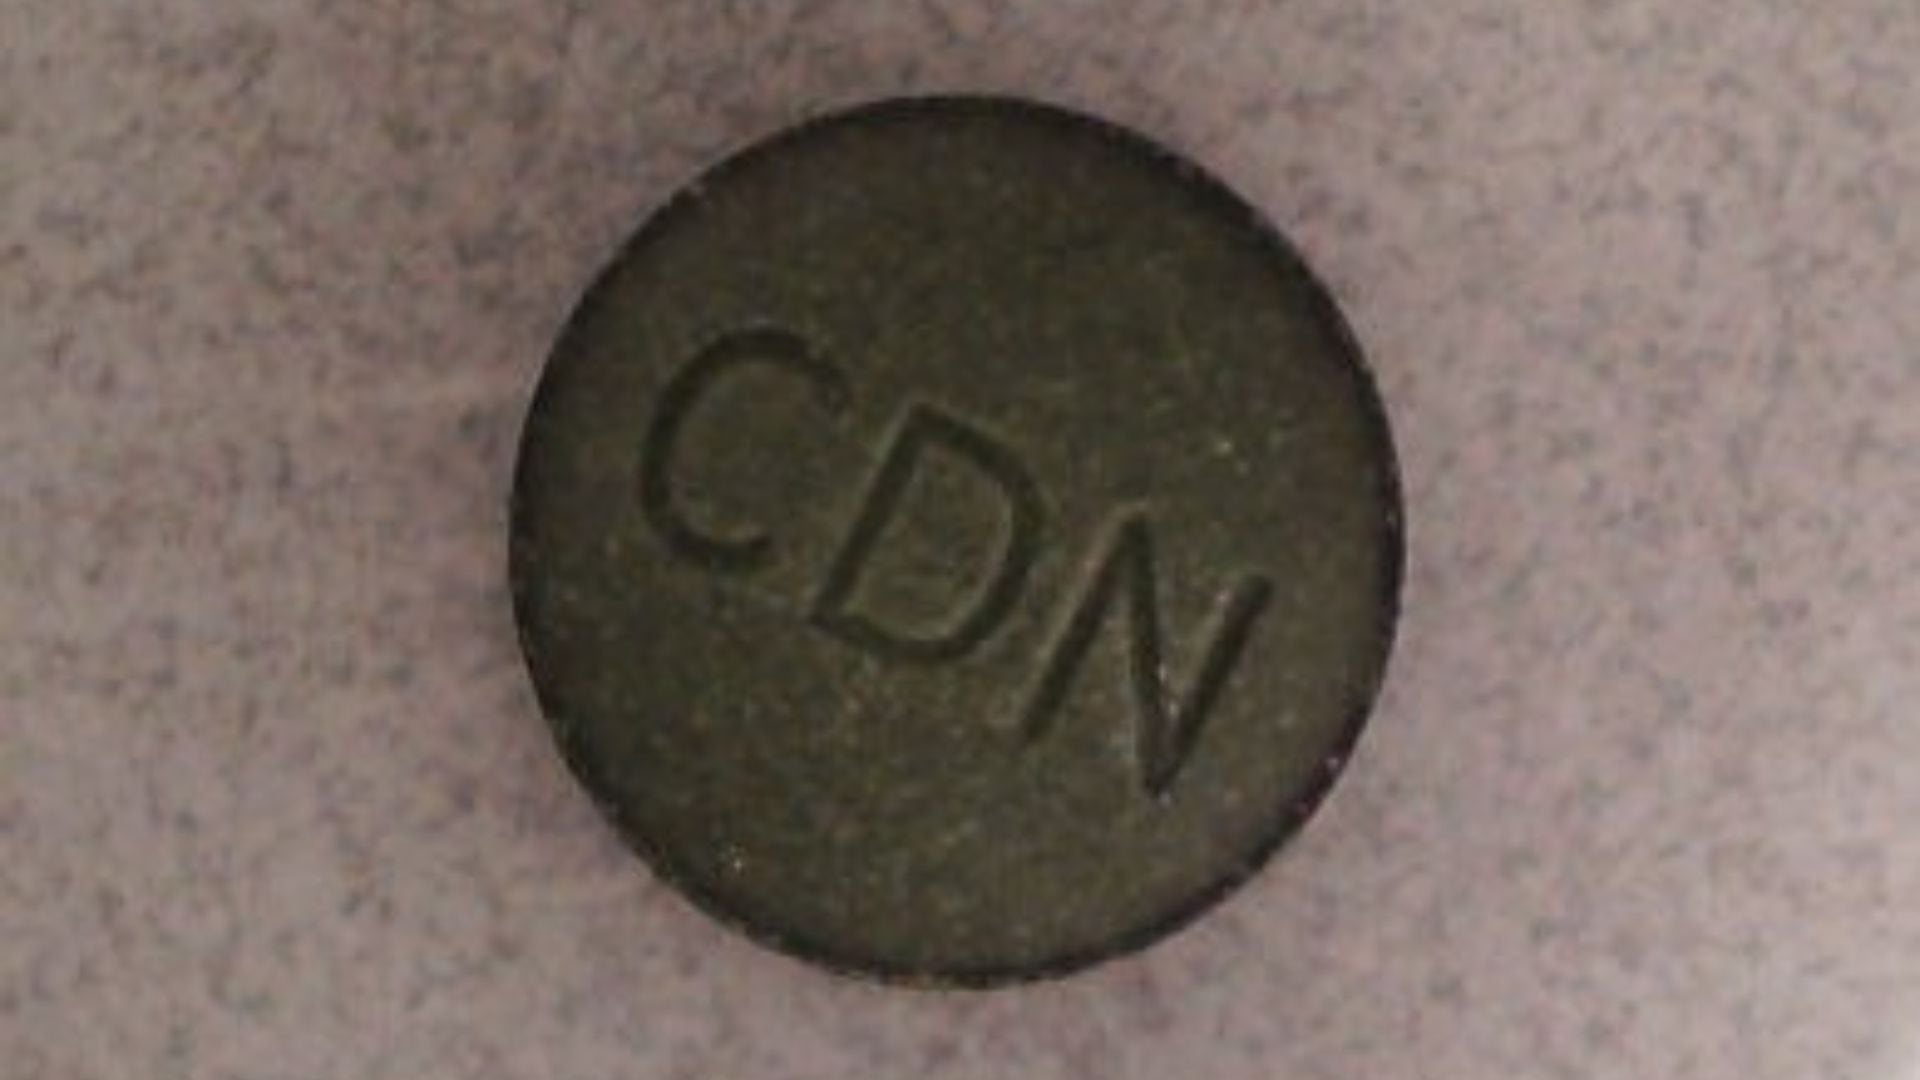 Pastilla de posible fentanilo con la leyenda "CDN" analizada en Canadá.